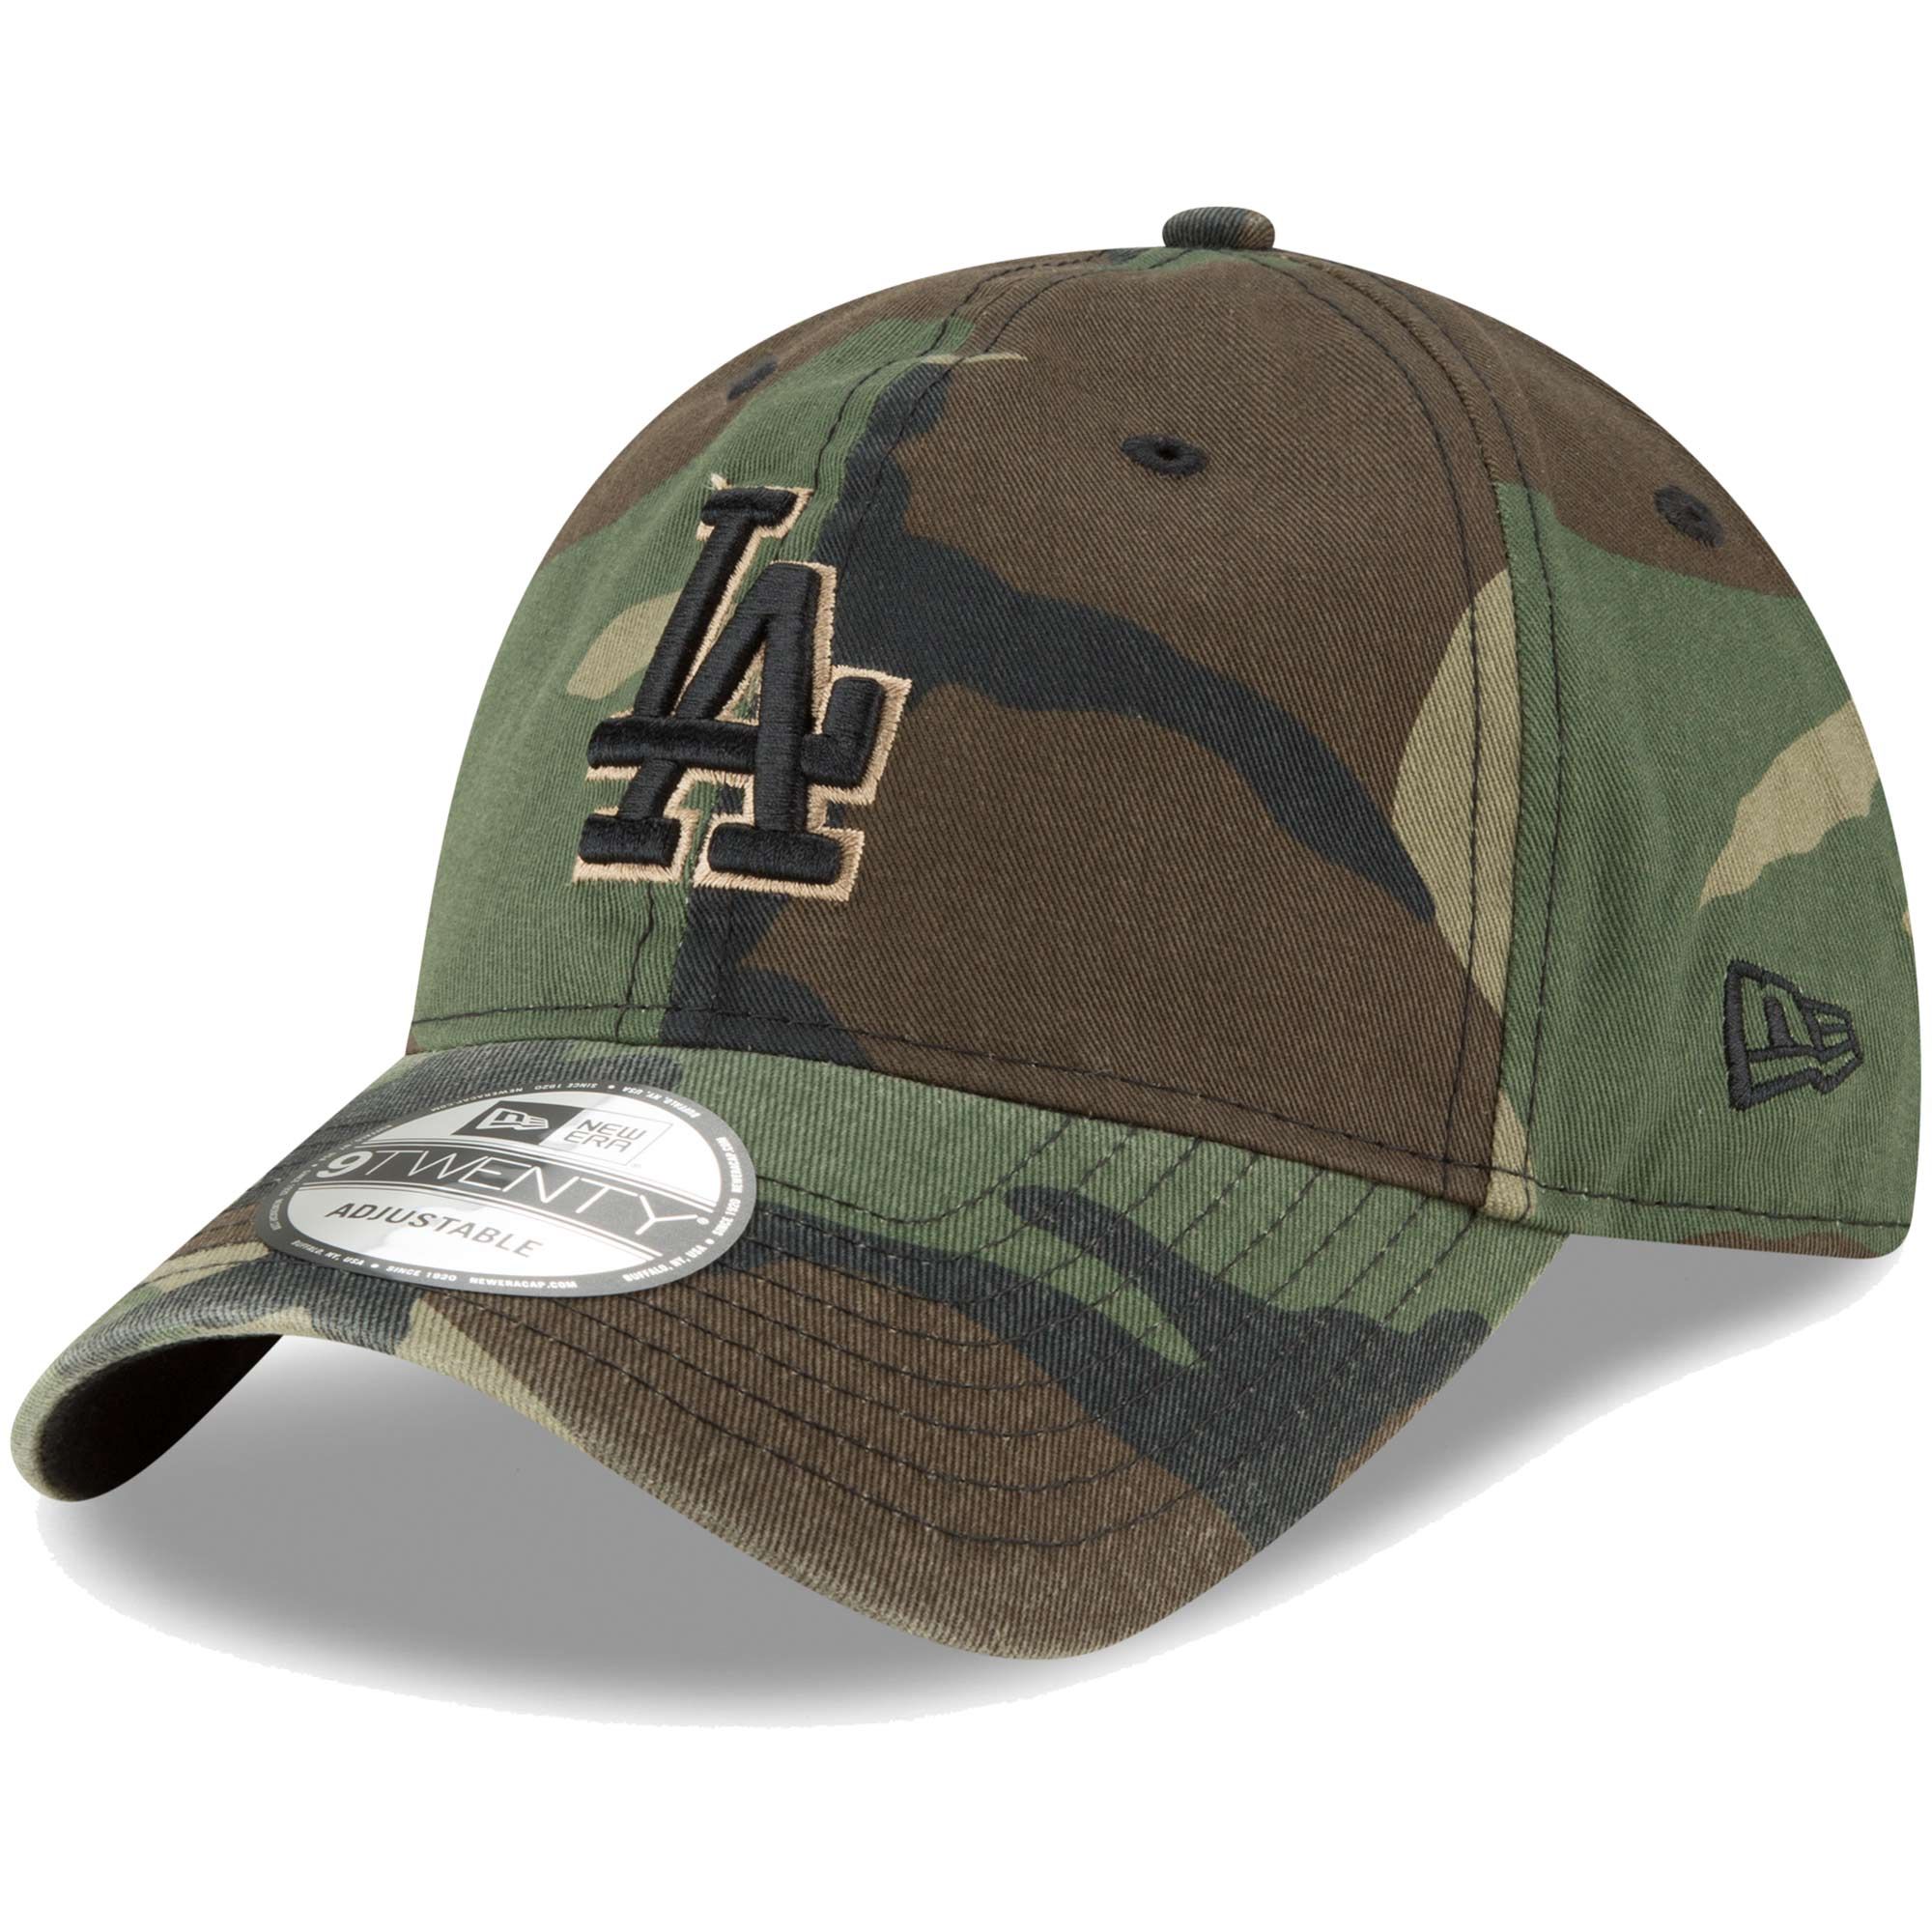 Los Angeles Dodgers New Era Core Classic Twill 9TWENTY Adjustable Hat - Camo | Fanatics.com